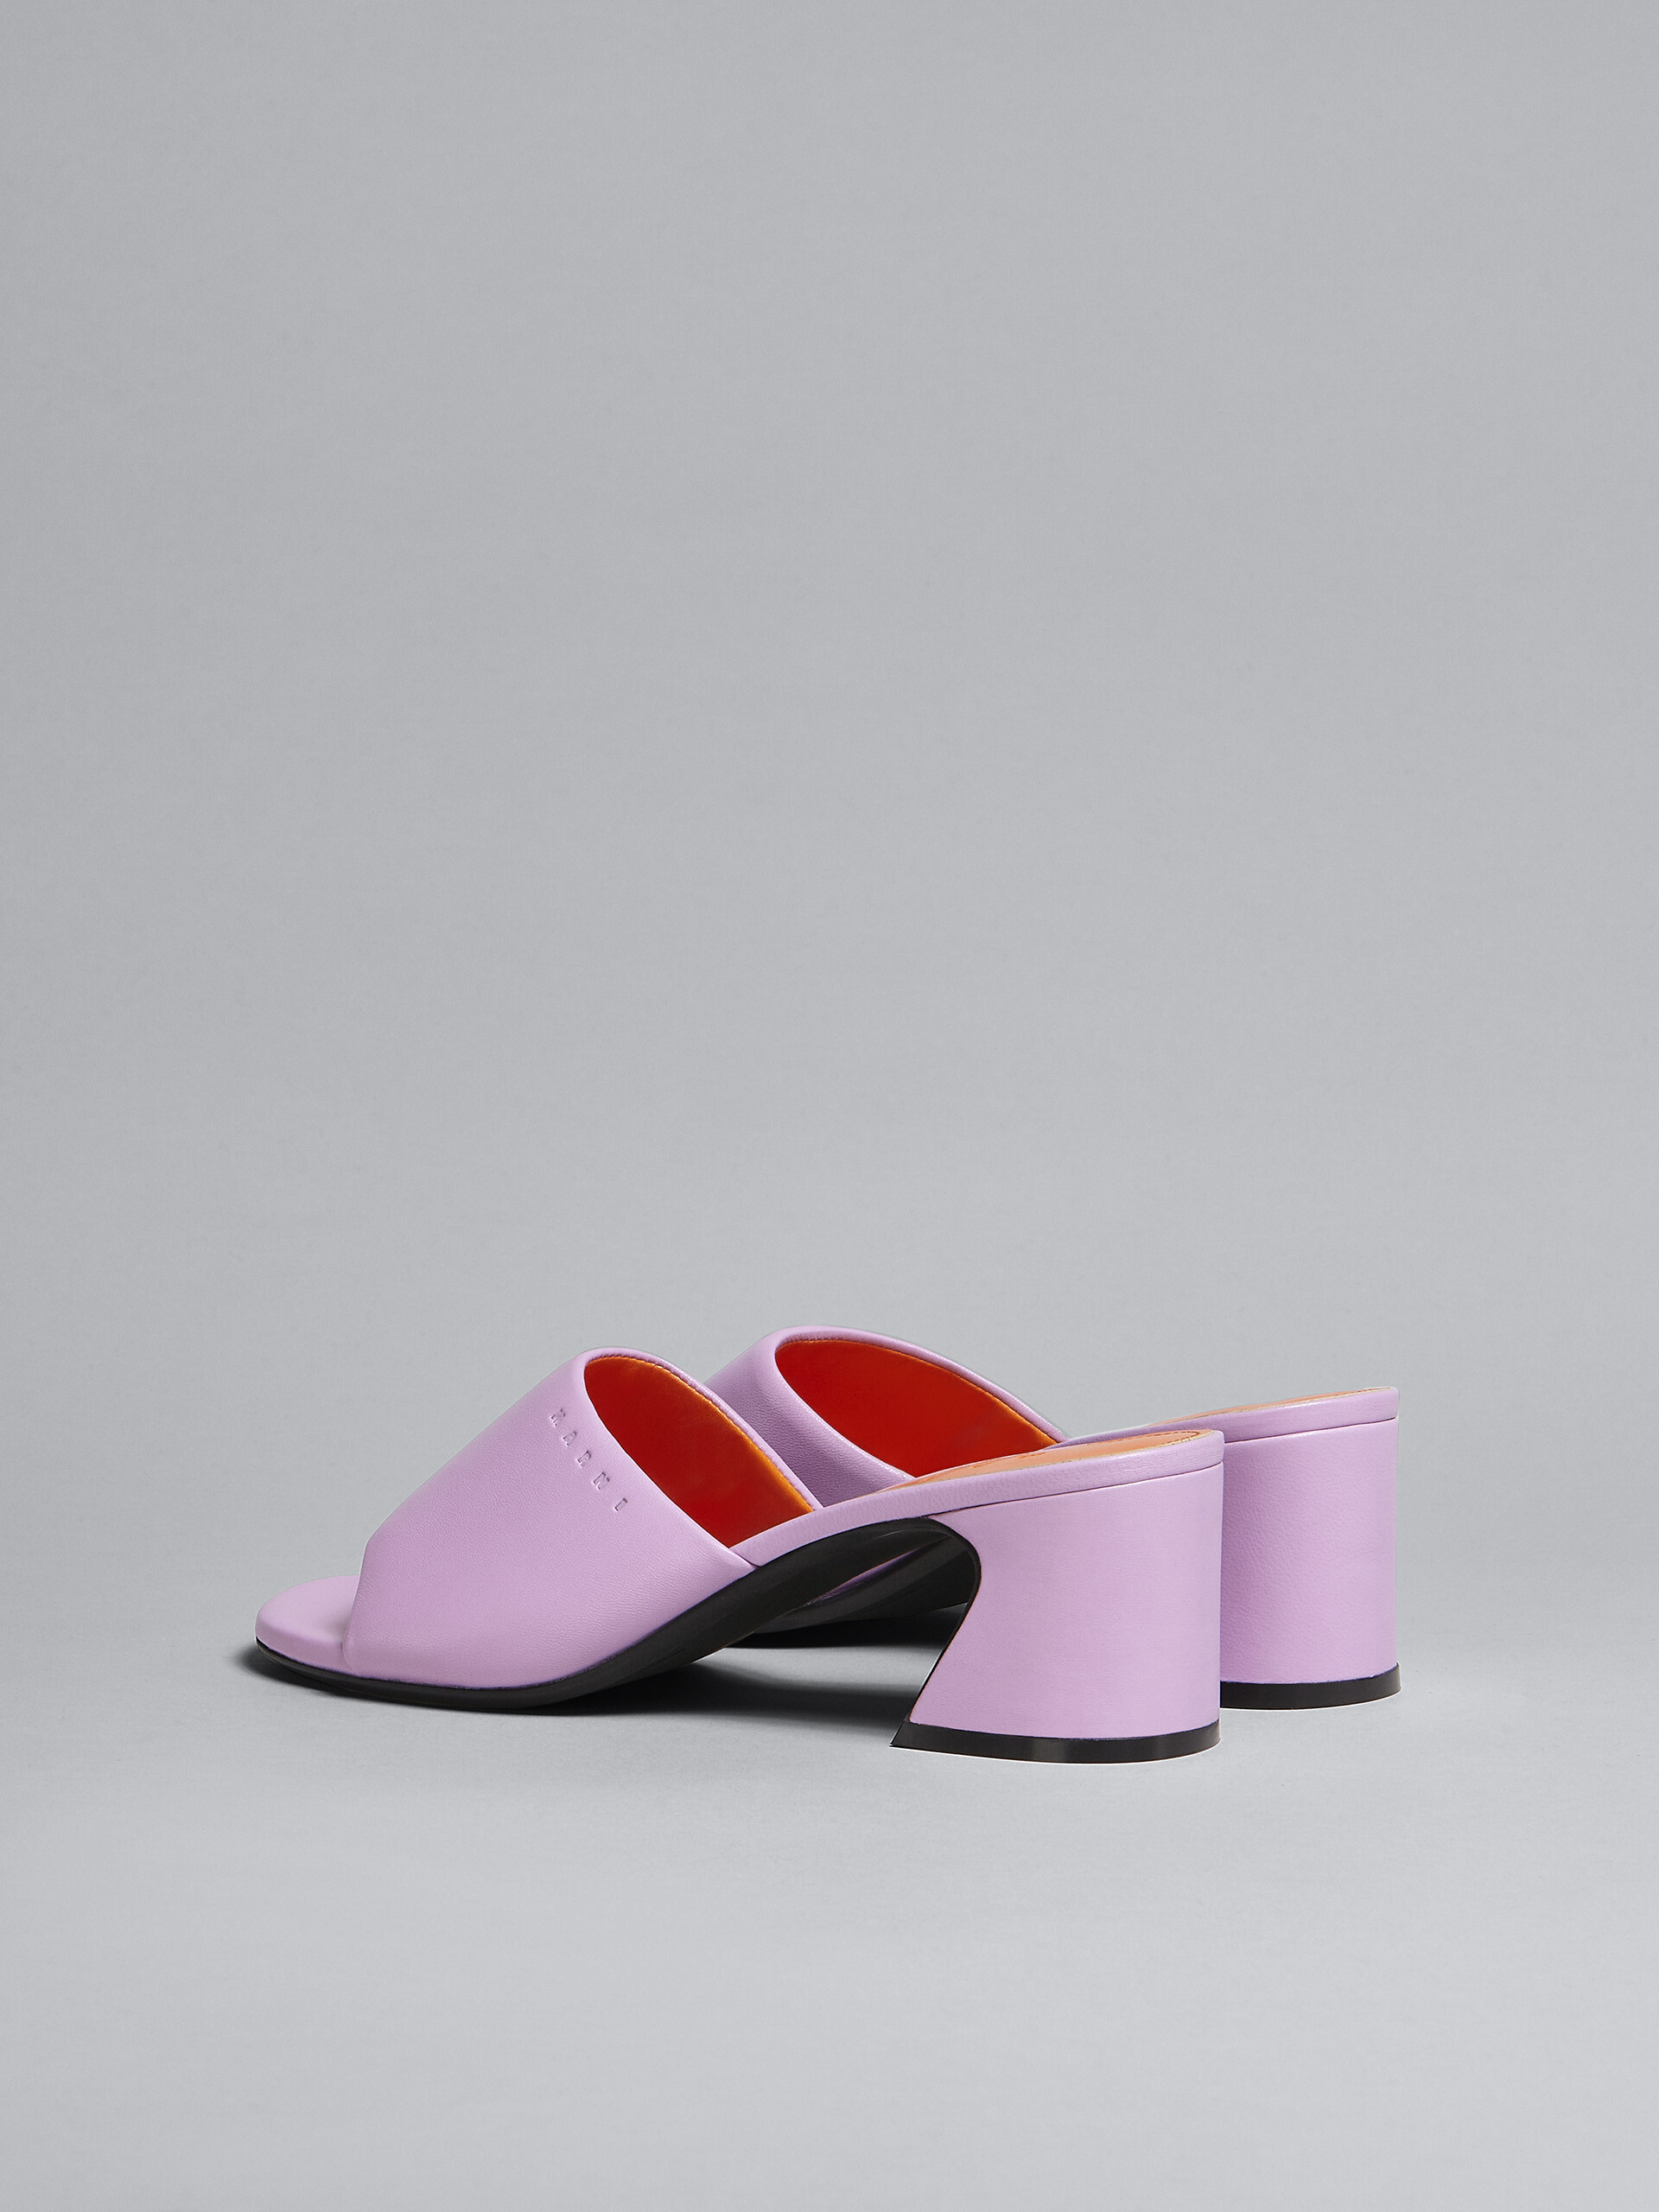 핑크 가죽 샌들 - Sandals - Image 3